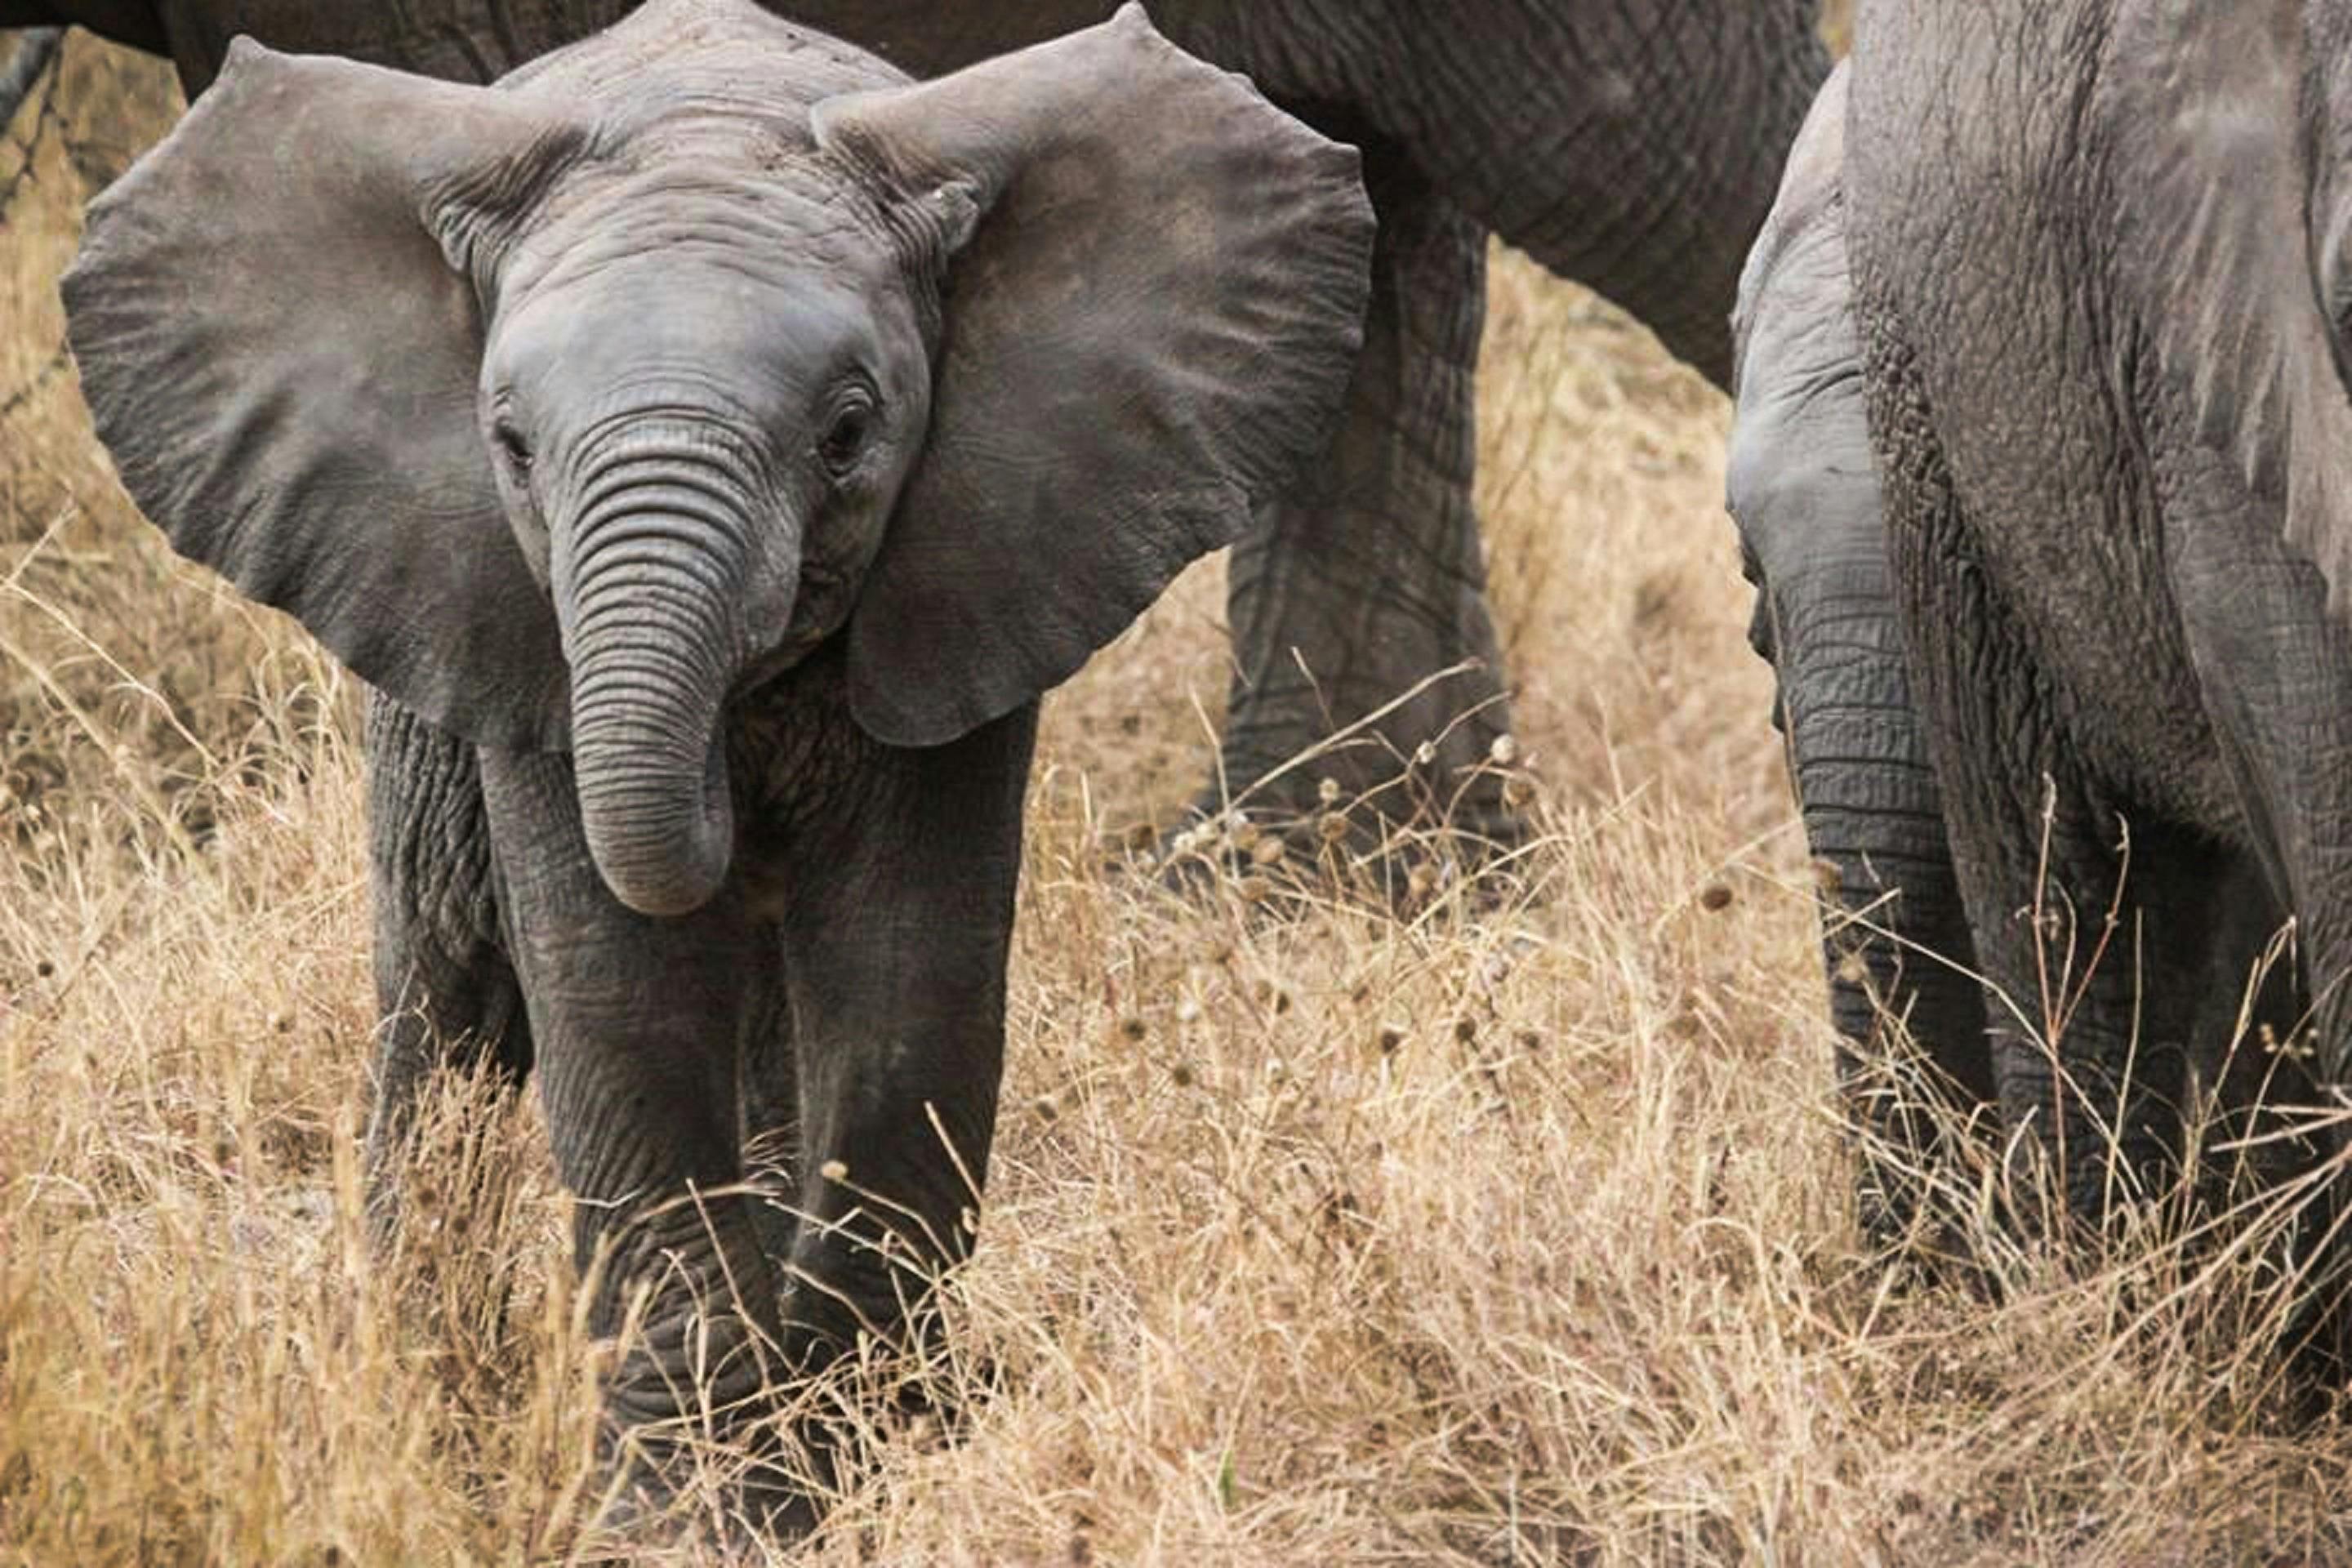 https://images.pexels.com/photos/59840/elephant-baby-safari-elephants-africa-59840.jpeg?cs=srgb&dl=pexels-pixabay-59840.jpg&fm=jpg